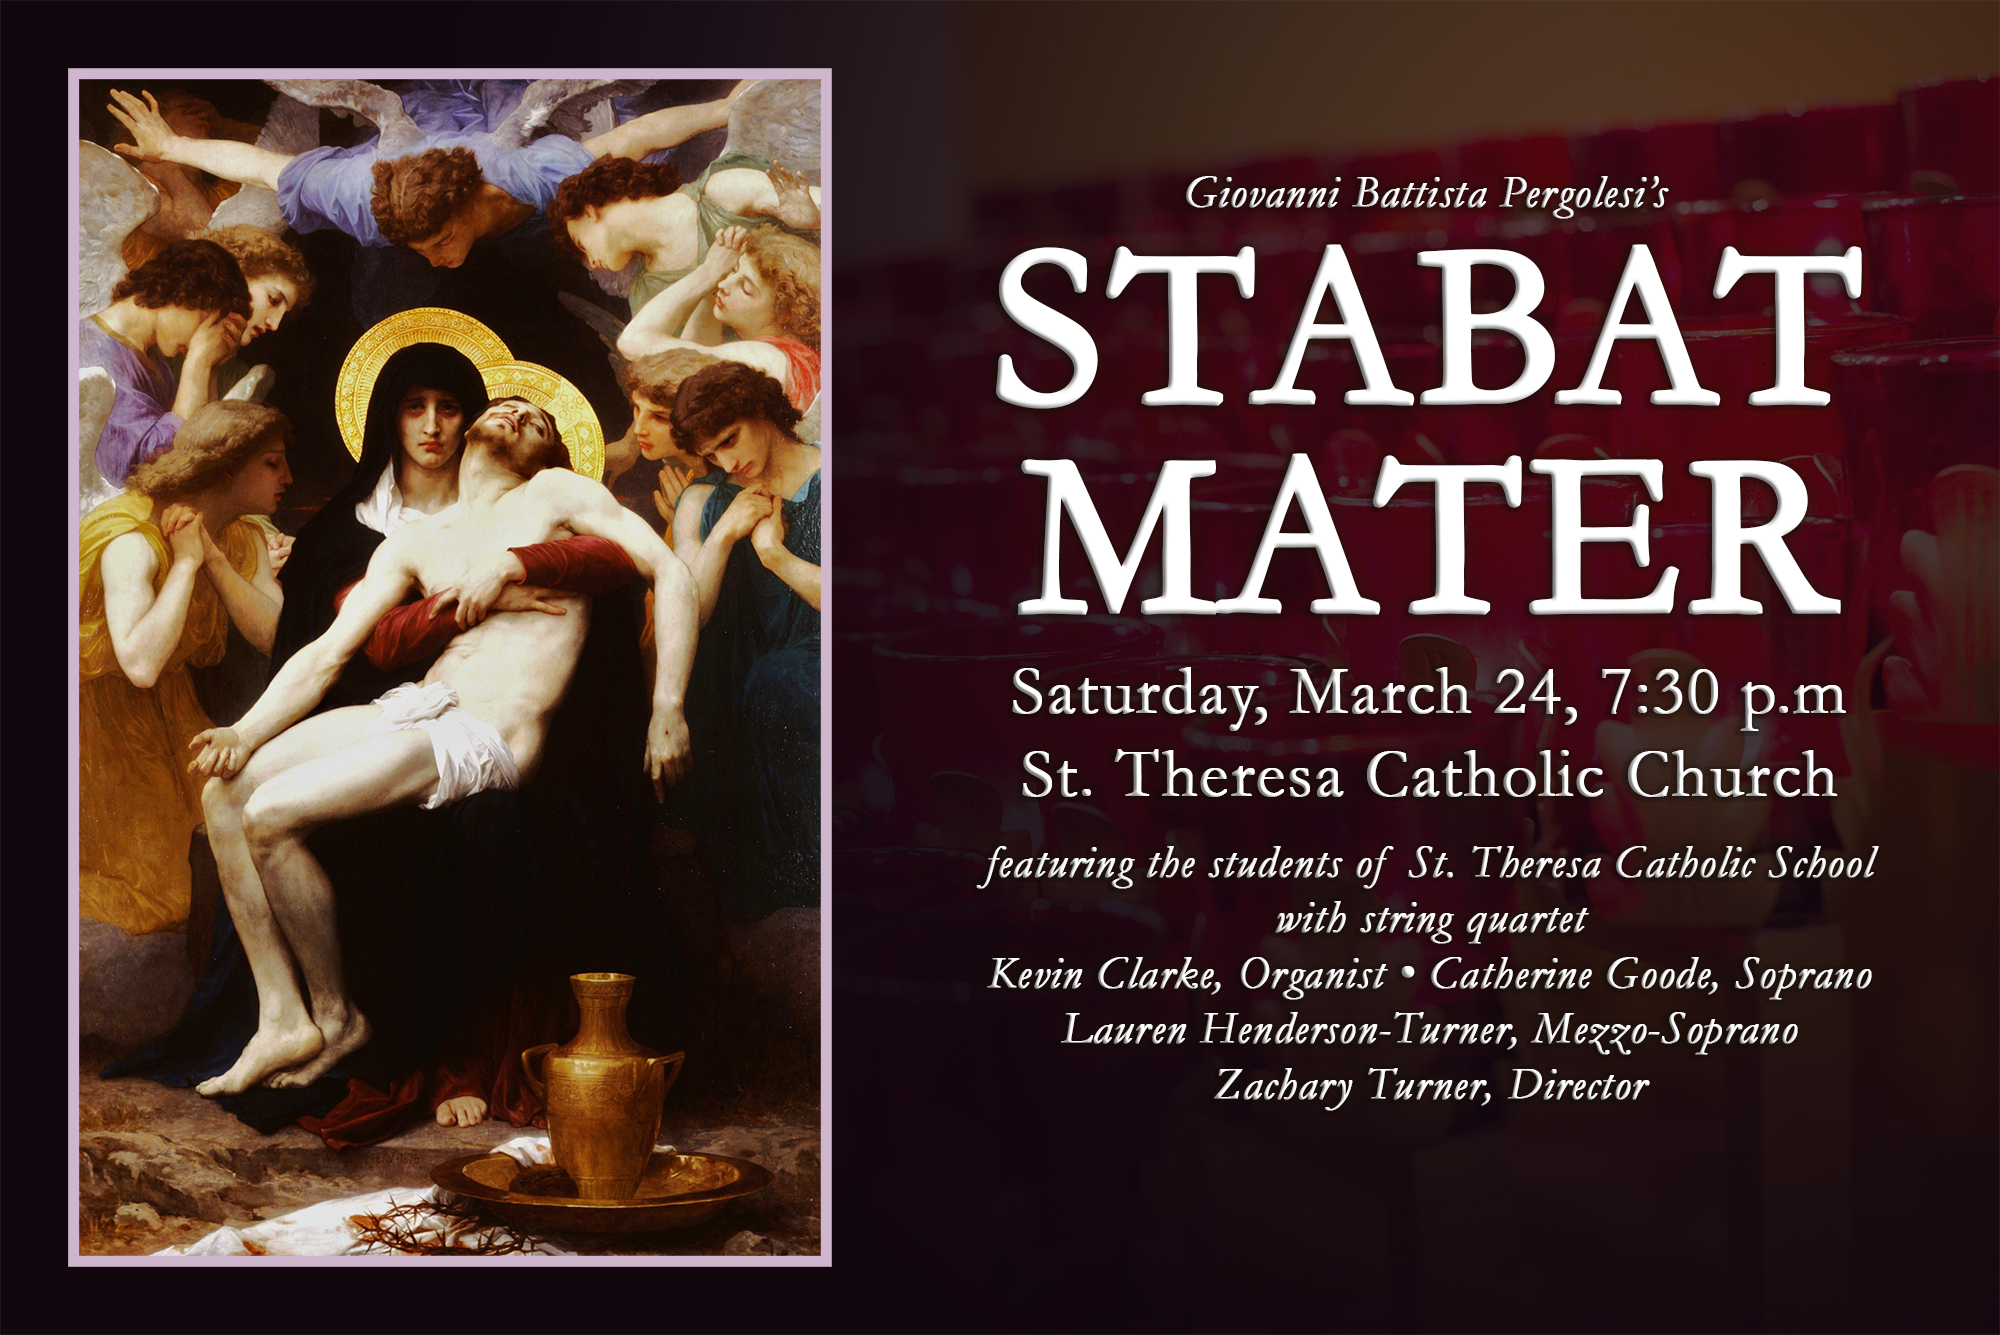 Stabat Mater Concert Saint Theresa Catholic Church